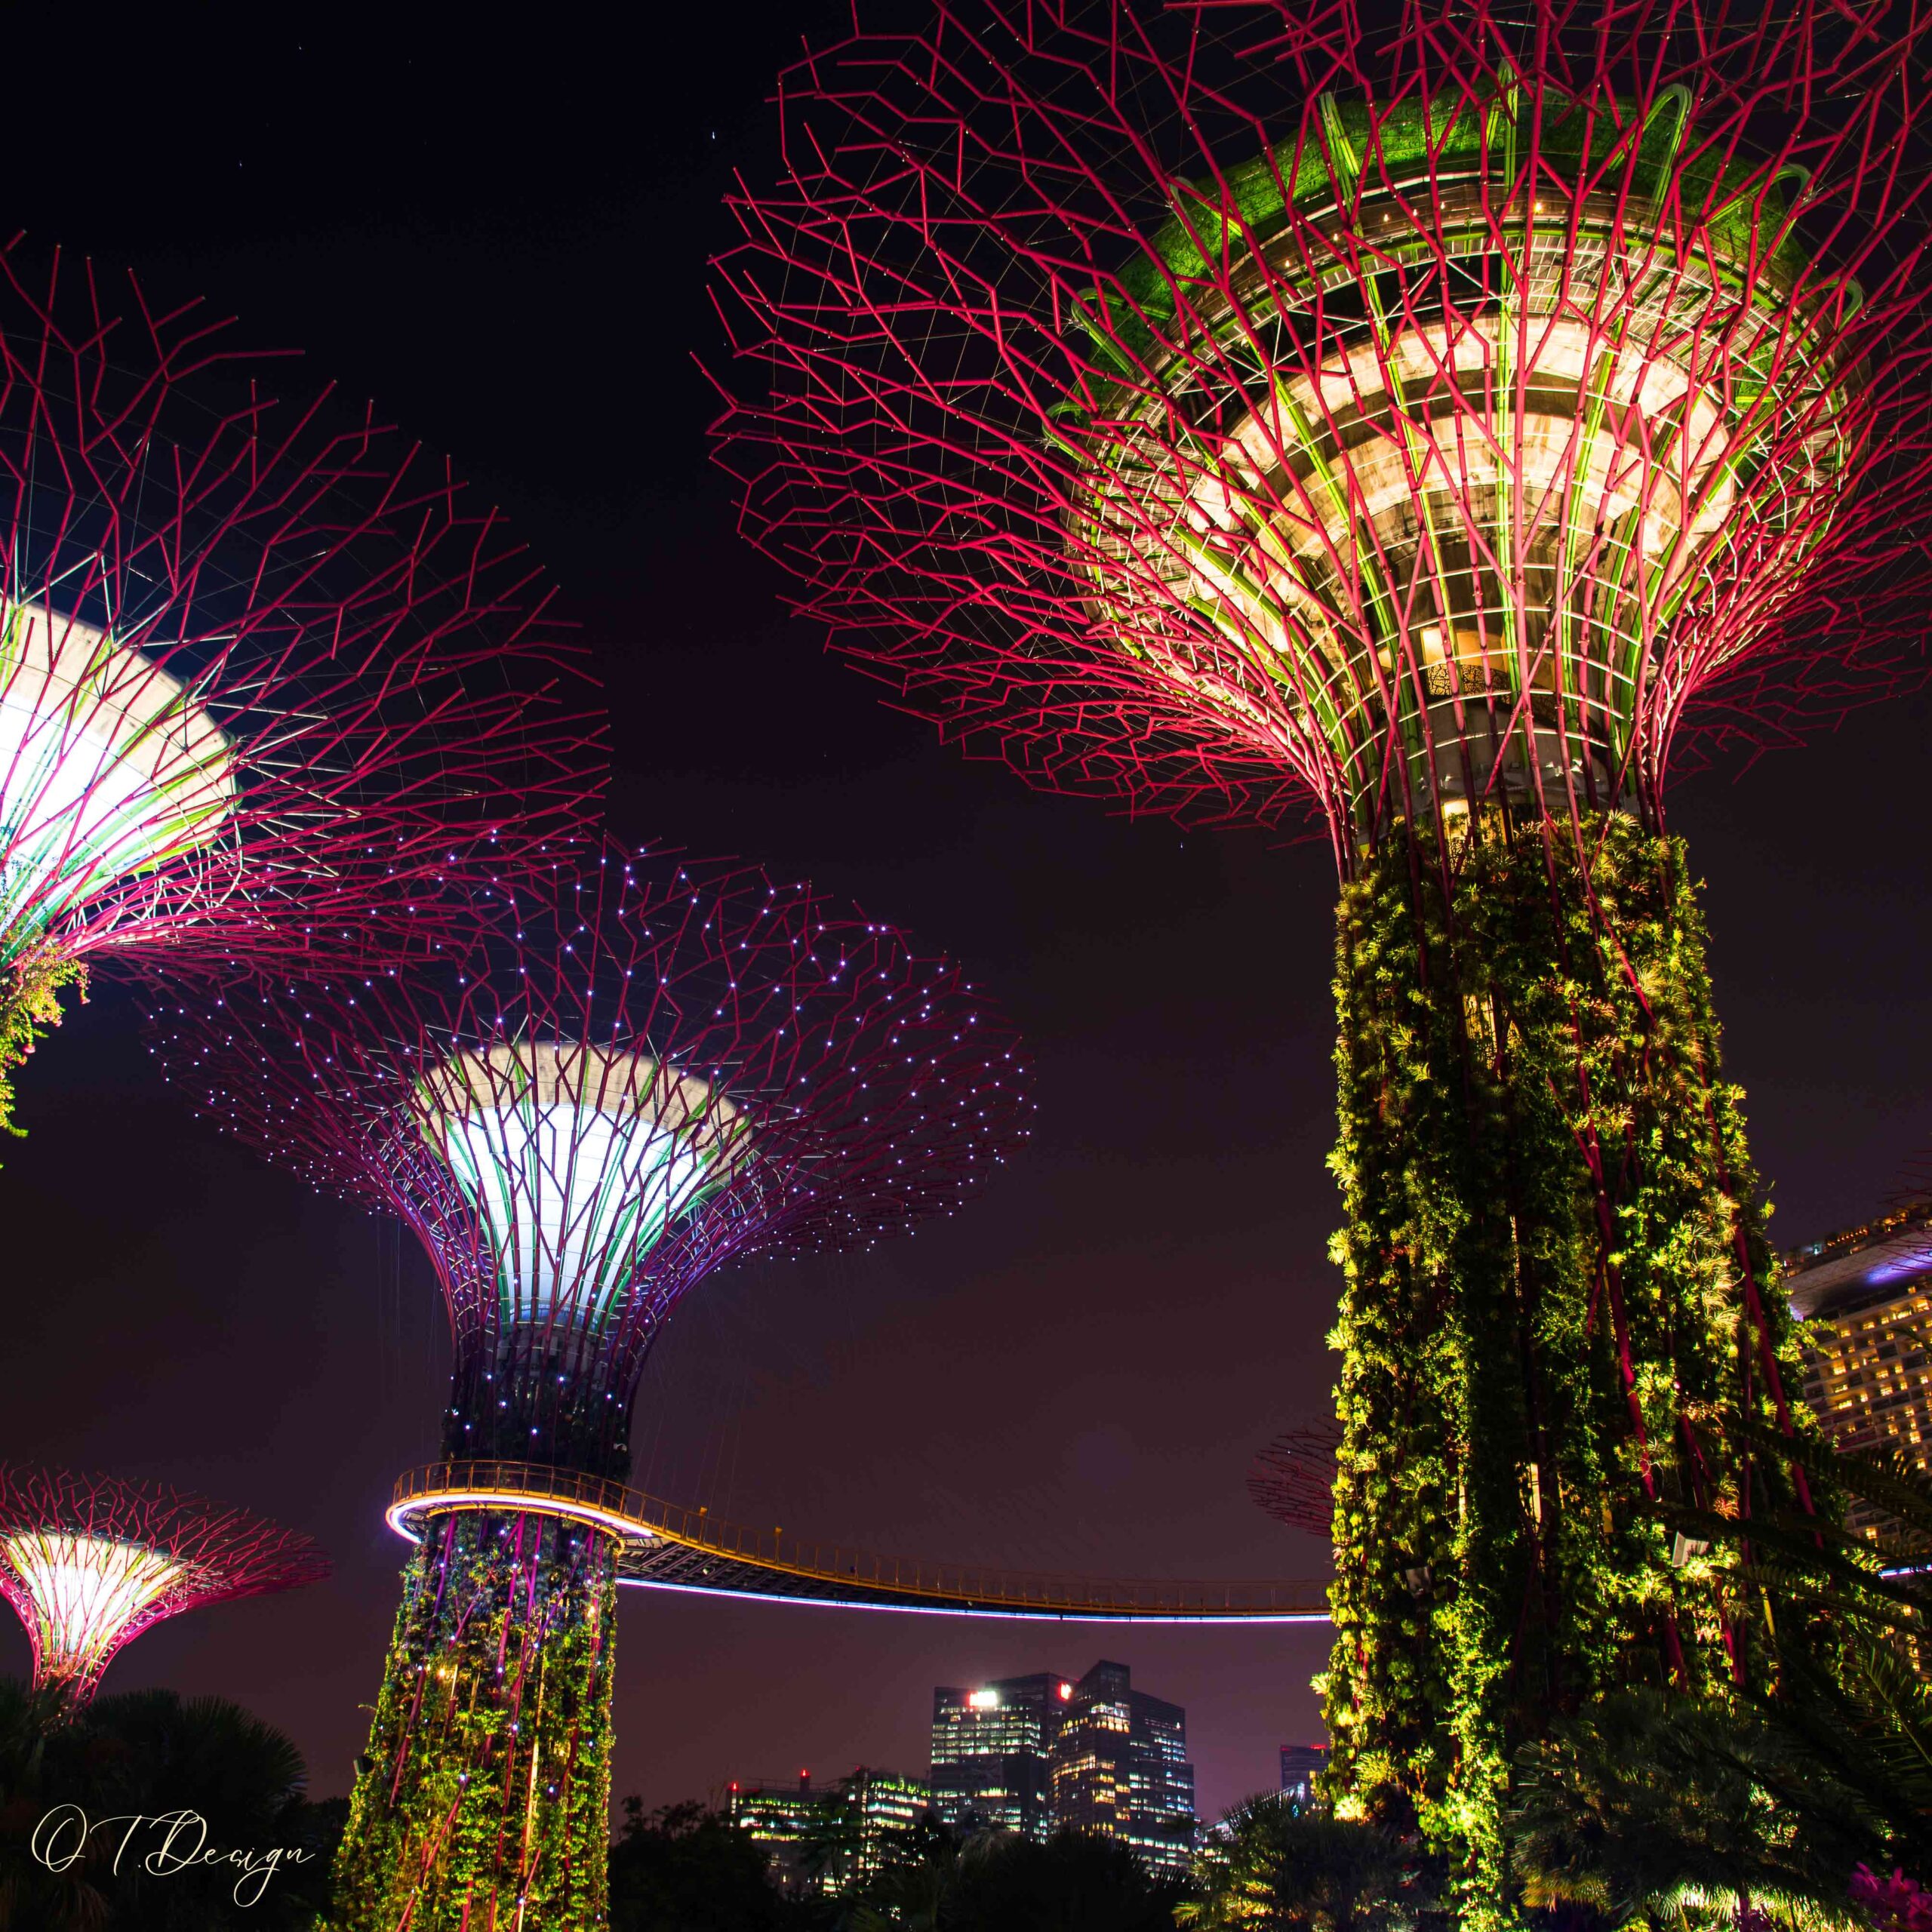 Botanic gardens' lights at night in Singapore